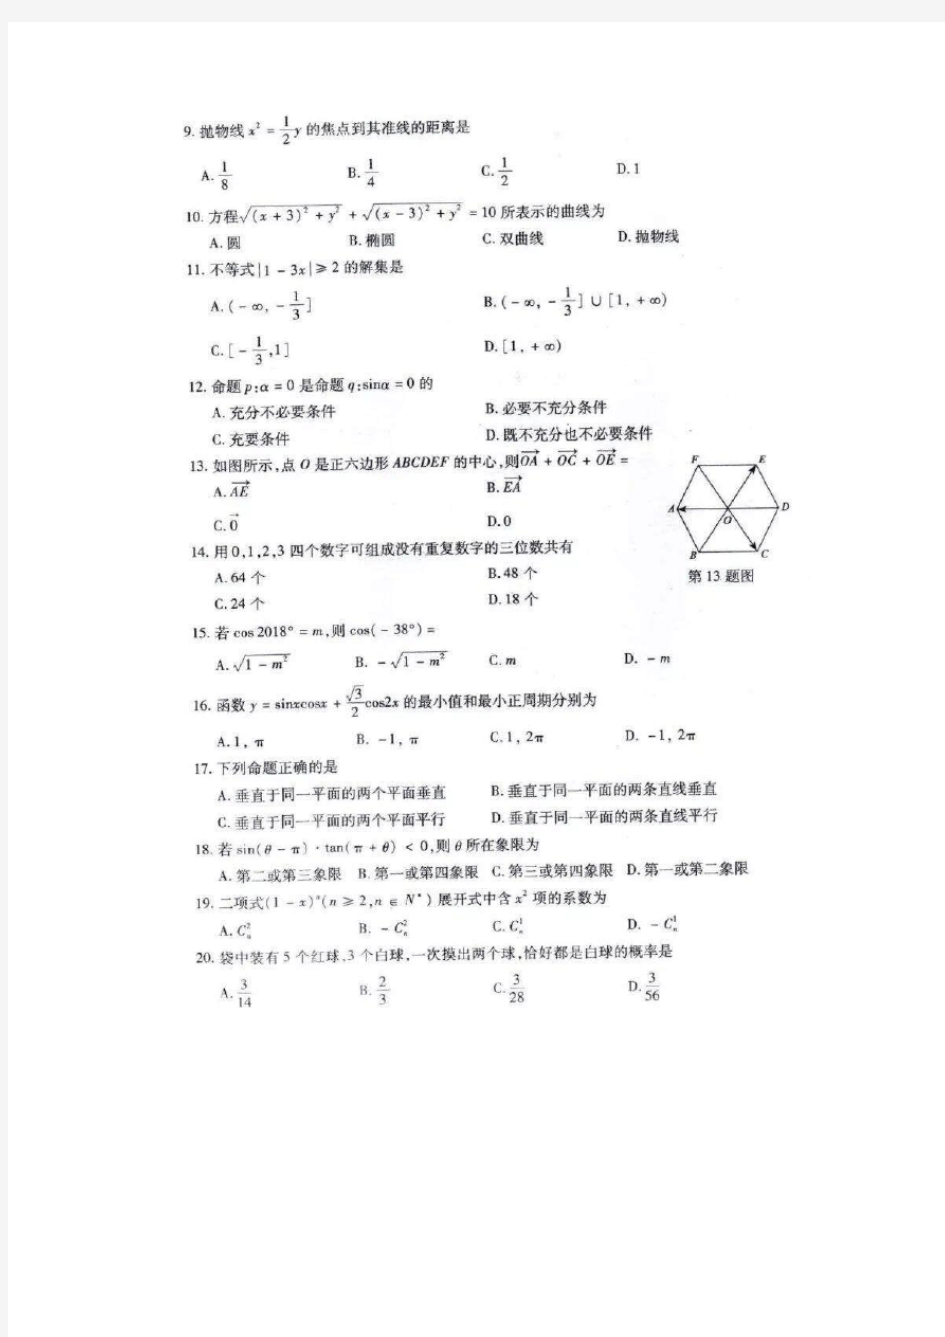 2018年浙江省单独考试招生文化考试数学试题卷及答案